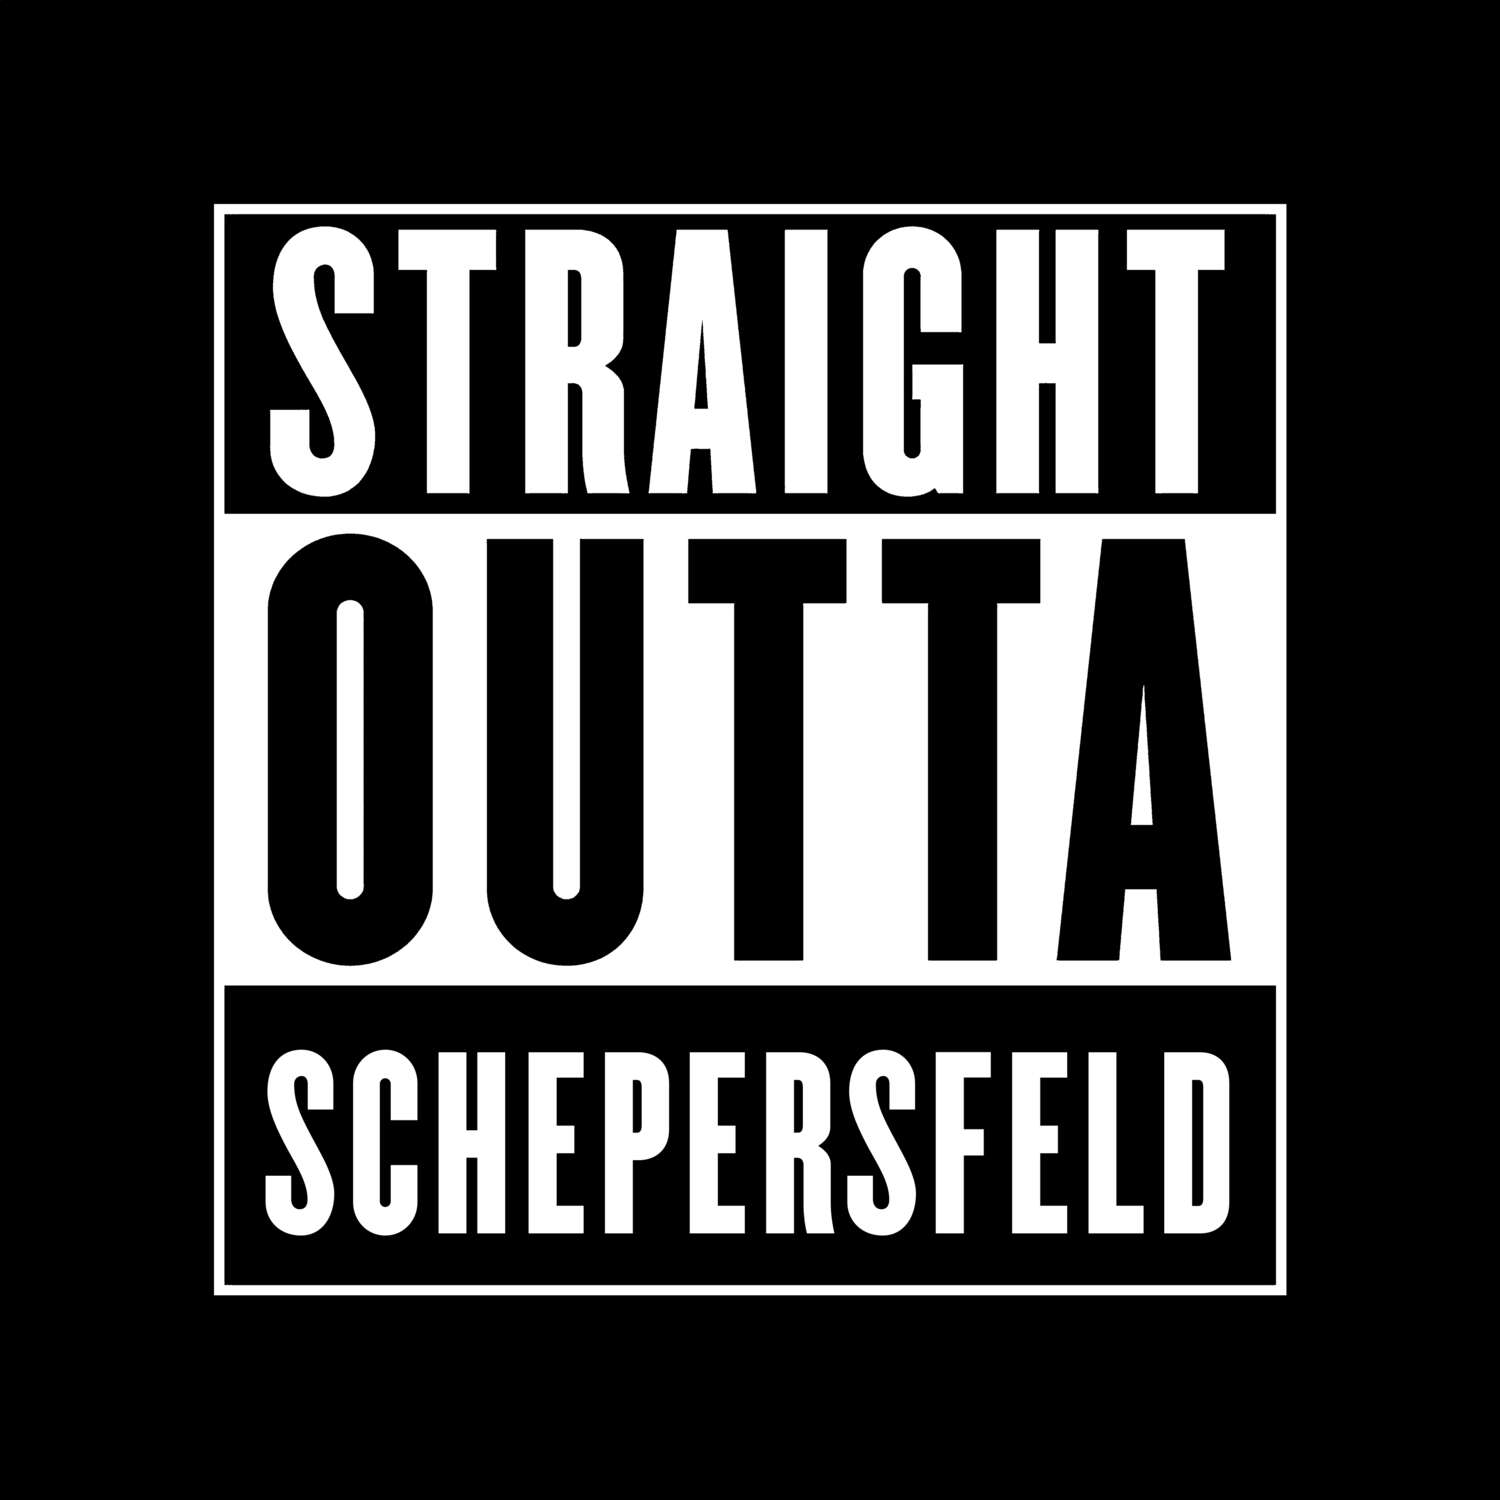 Schepersfeld T-Shirt »Straight Outta«